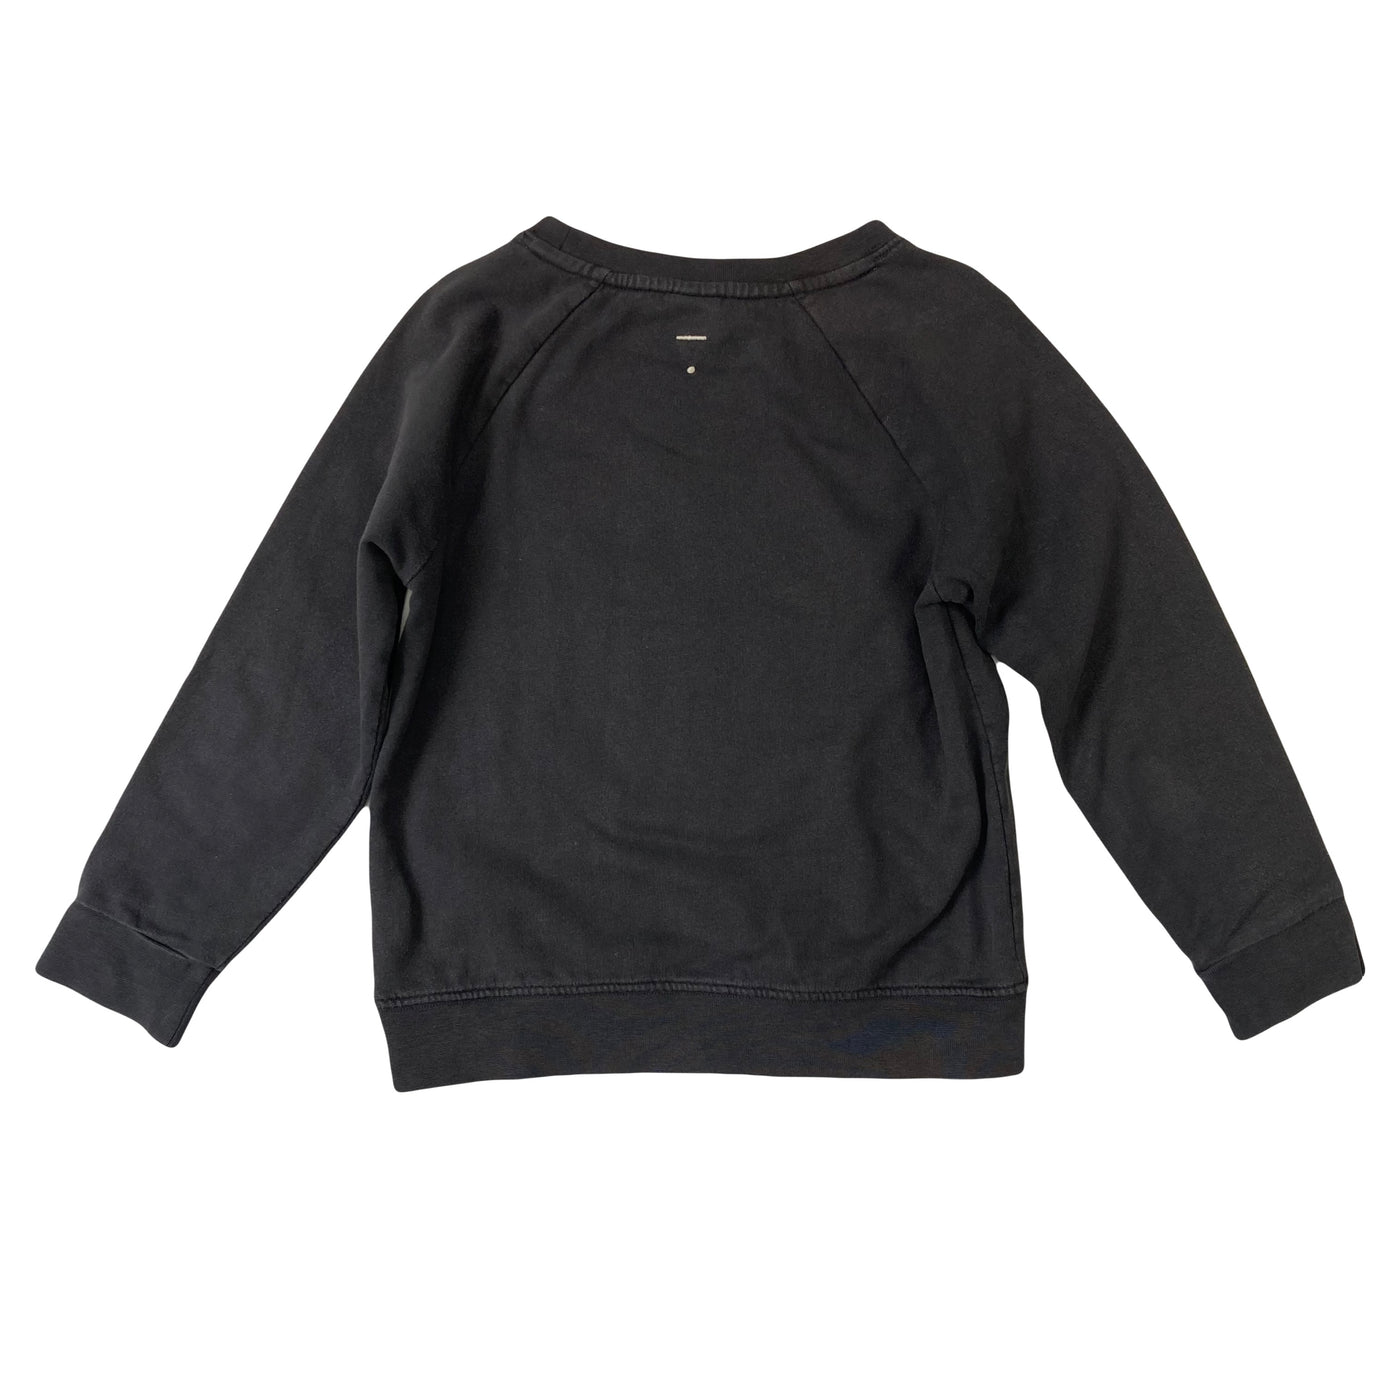 Gray Label crewneck sweatshirt 5/6y